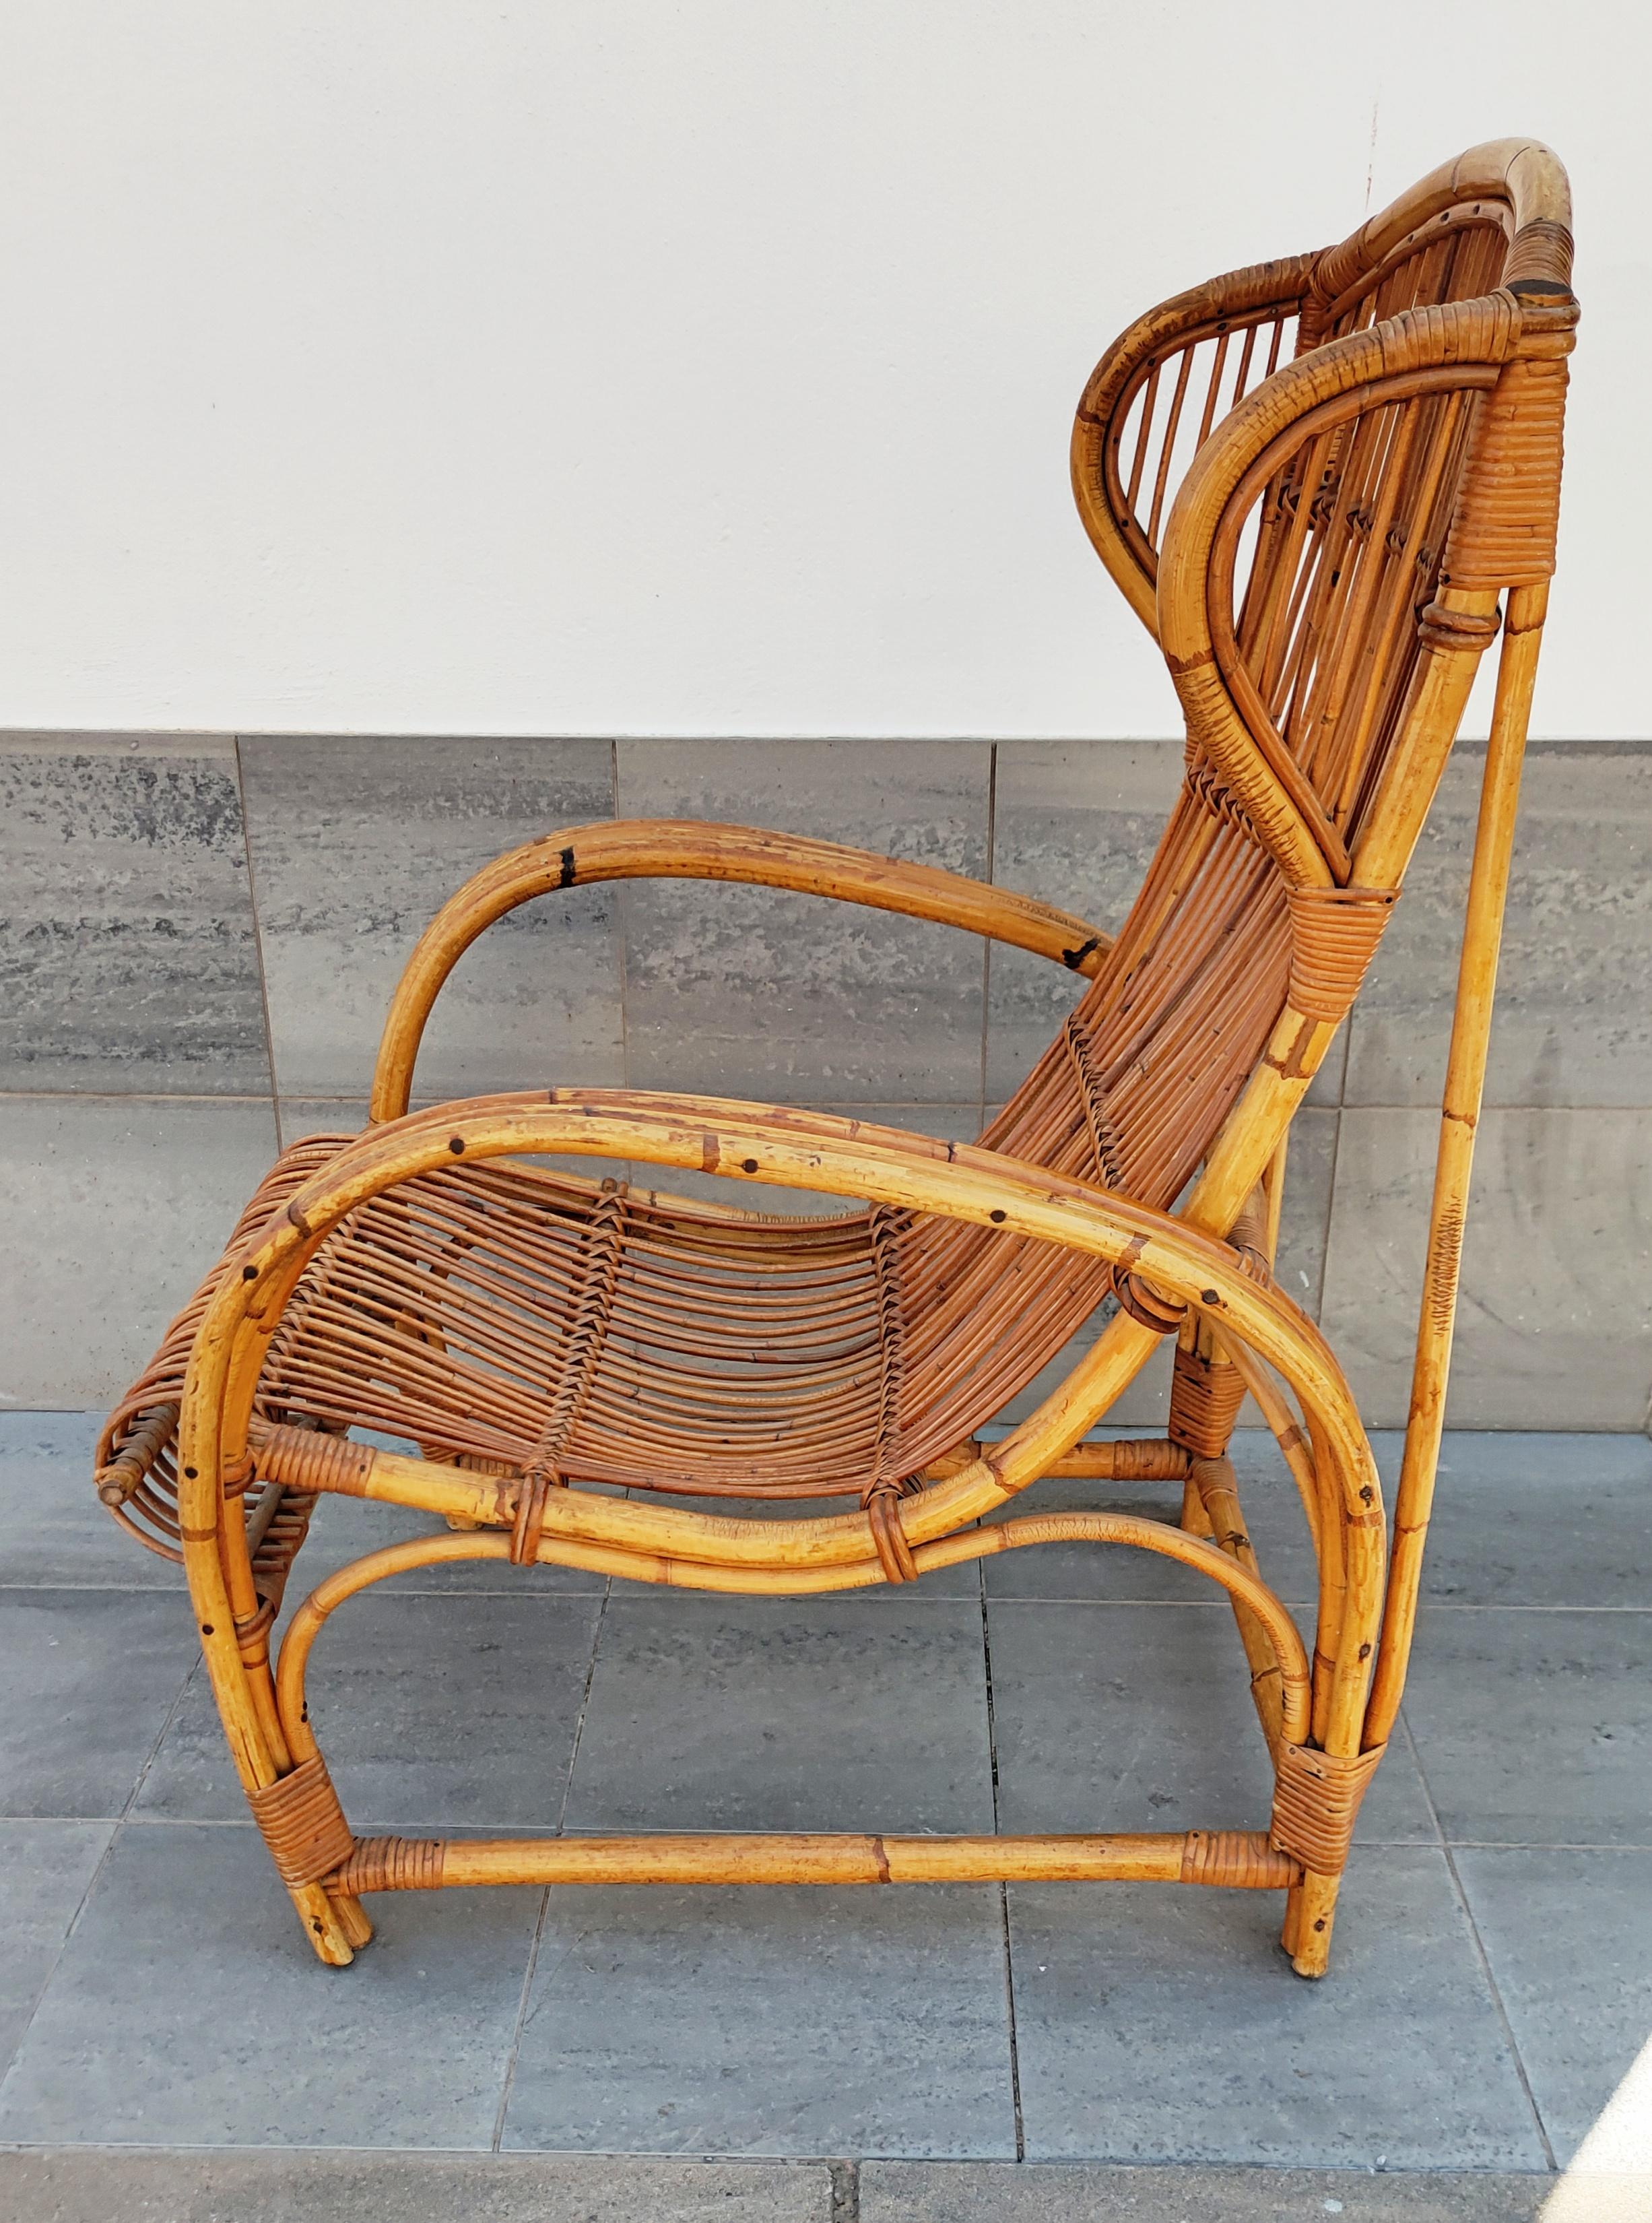 Seltener und schöner Sessel aus Rattan und Bambus, hergestellt in Italien in den 1960er Jahren.
In perfektem Vintage-Zustand.
Sehr gemütlich.